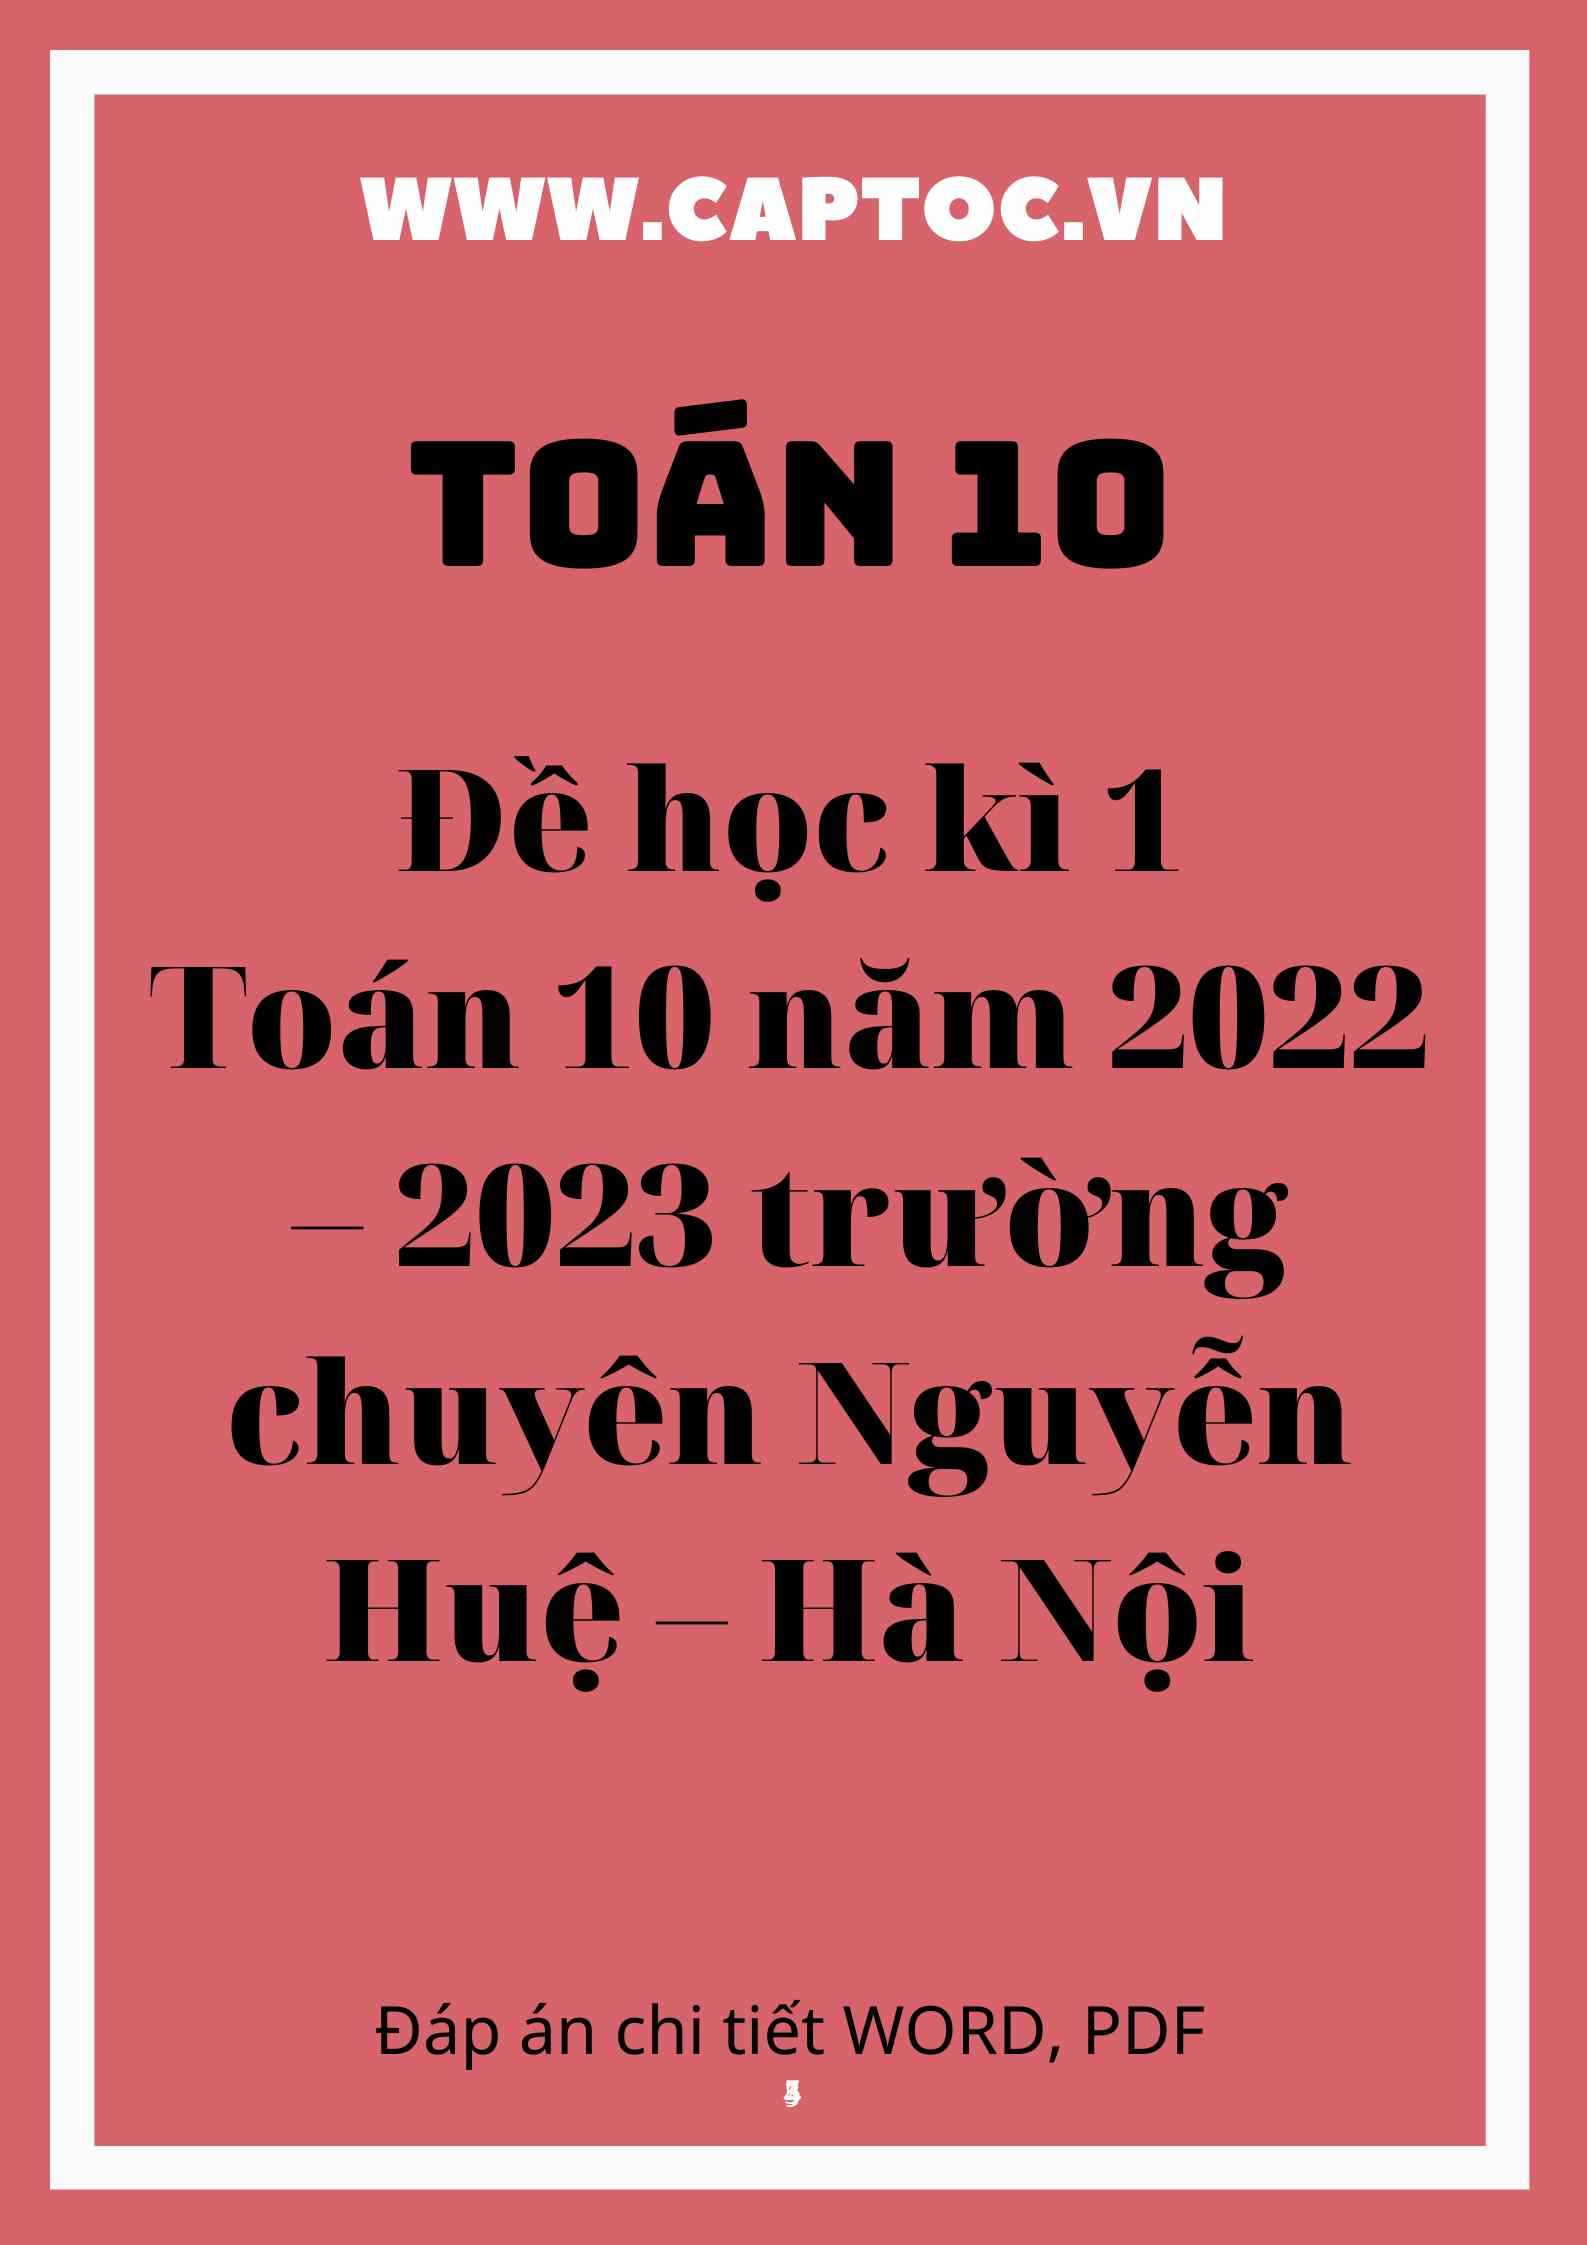 Đề học kì 1 Toán 10 năm 2022 – 2023 trường chuyên Nguyễn Huệ – Hà Nội